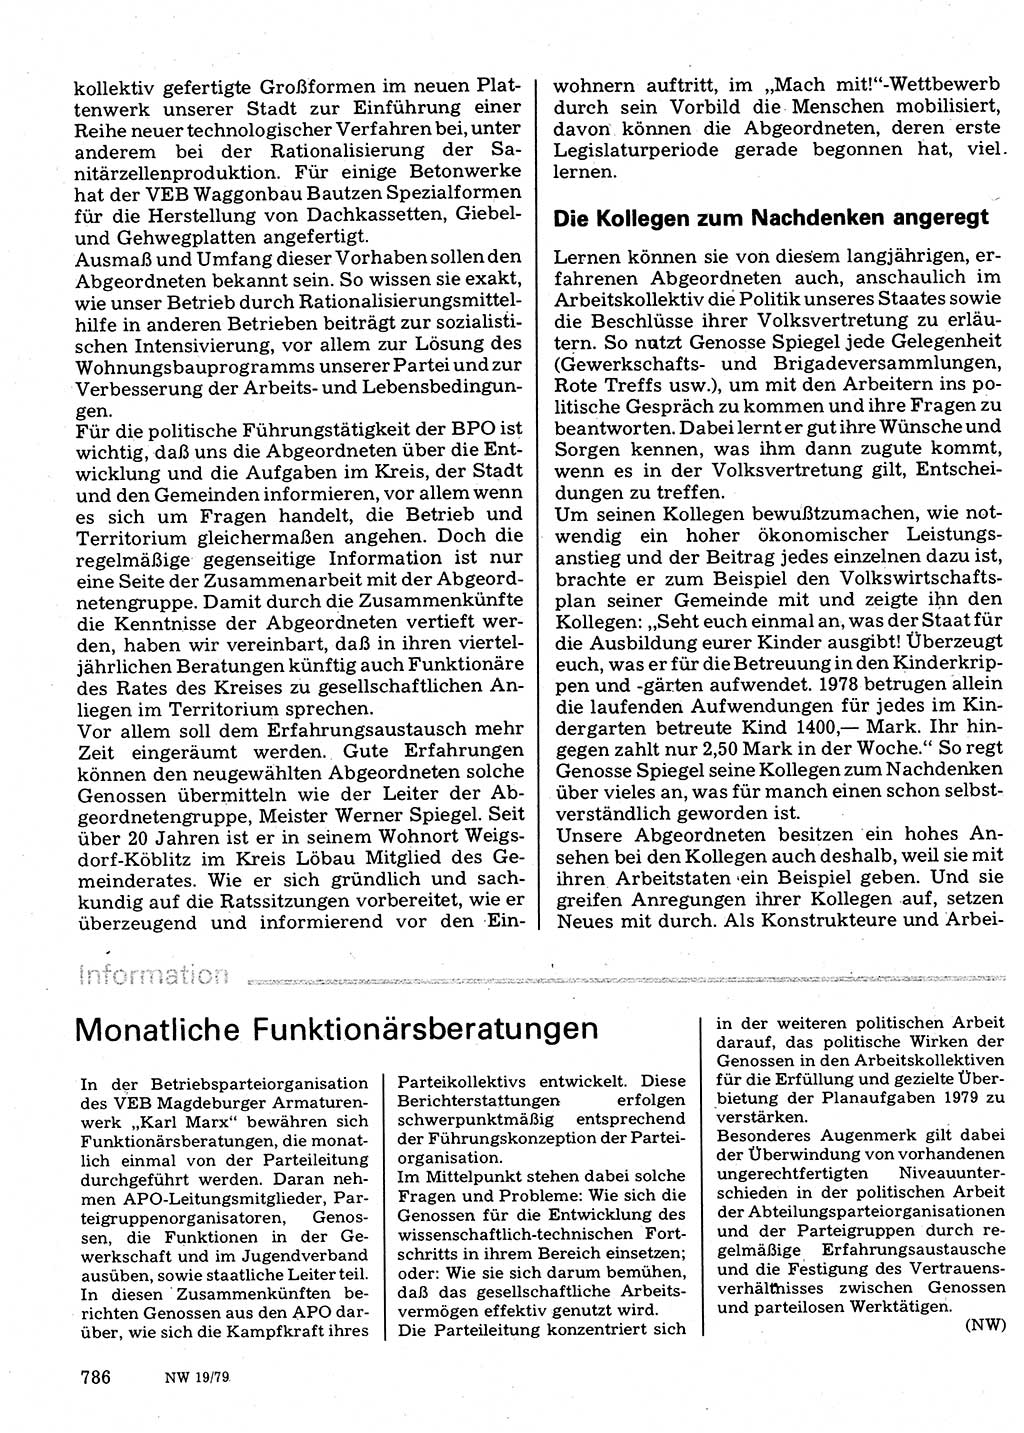 Neuer Weg (NW), Organ des Zentralkomitees (ZK) der SED (Sozialistische Einheitspartei Deutschlands) für Fragen des Parteilebens, 34. Jahrgang [Deutsche Demokratische Republik (DDR)] 1979, Seite 786 (NW ZK SED DDR 1979, S. 786)